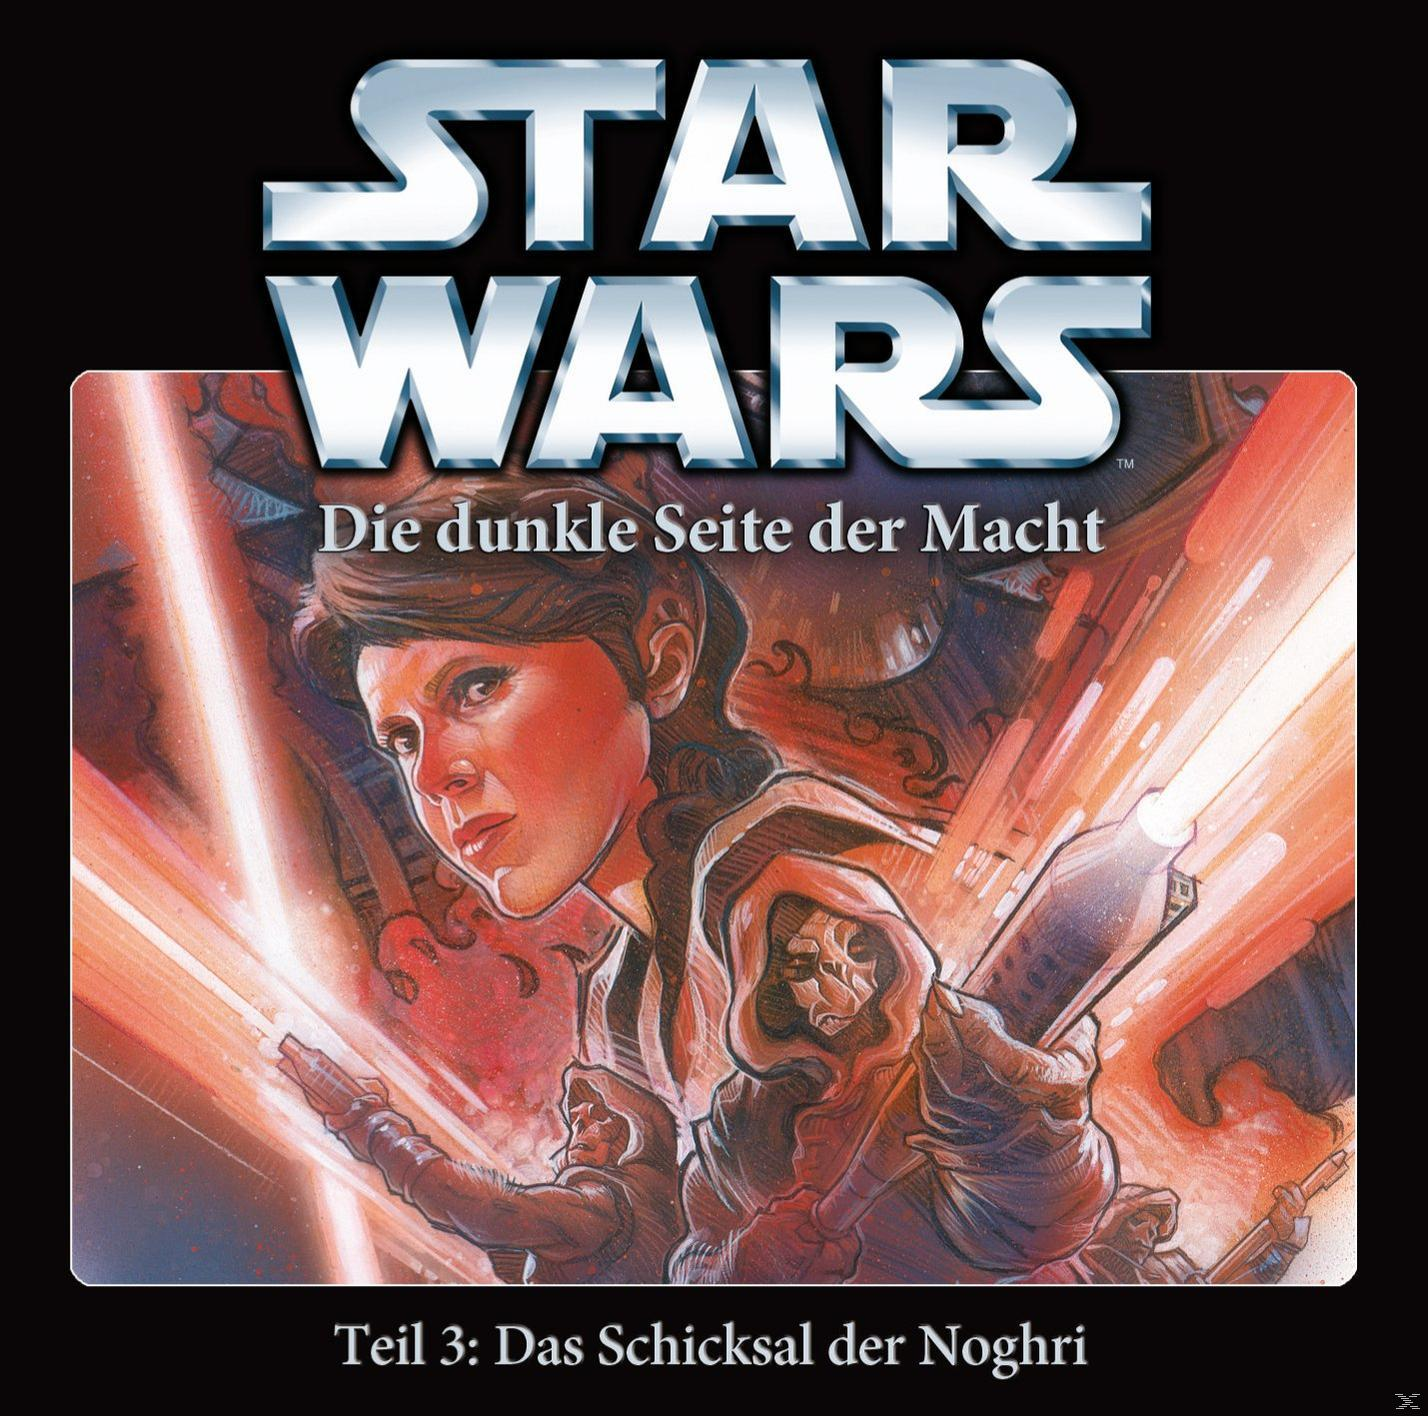 - Macht 3 Das Wars Dunkle Die - - Seite Der Schicksal Noghri (CD) Star der Teil